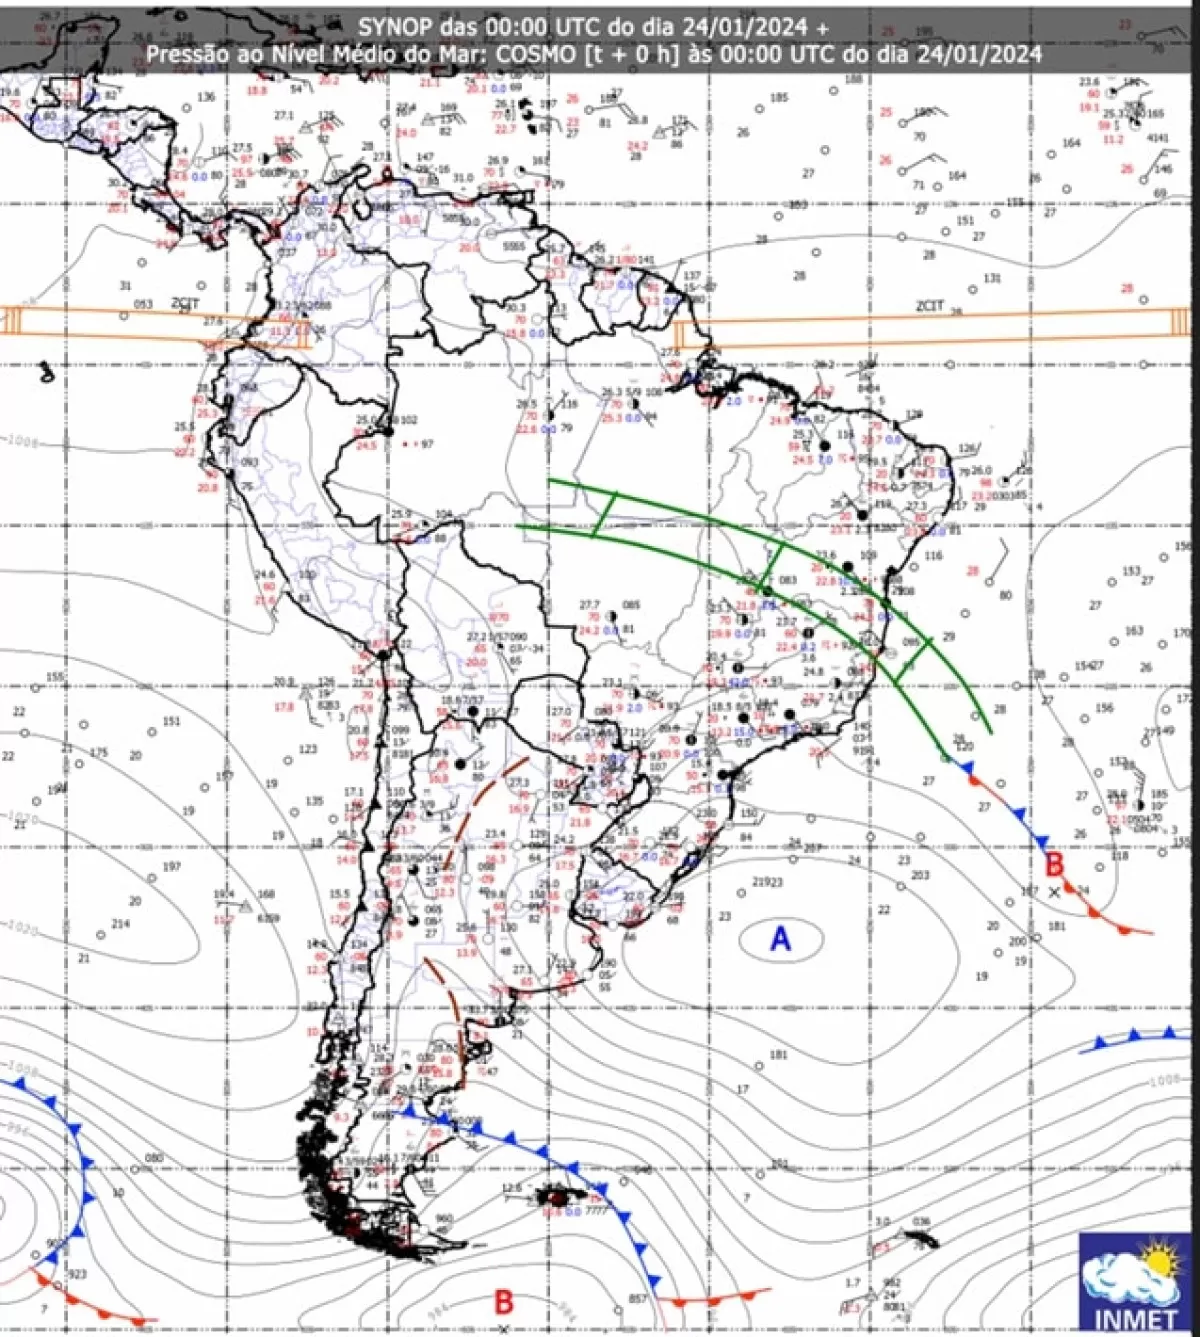 Figura 1: Zona de Convergência do Atlântico Sul (ZCAS) – símbolo em verde, na carta sinótica referente às 21h do dia 23/01/2024, no horário de Brasília.